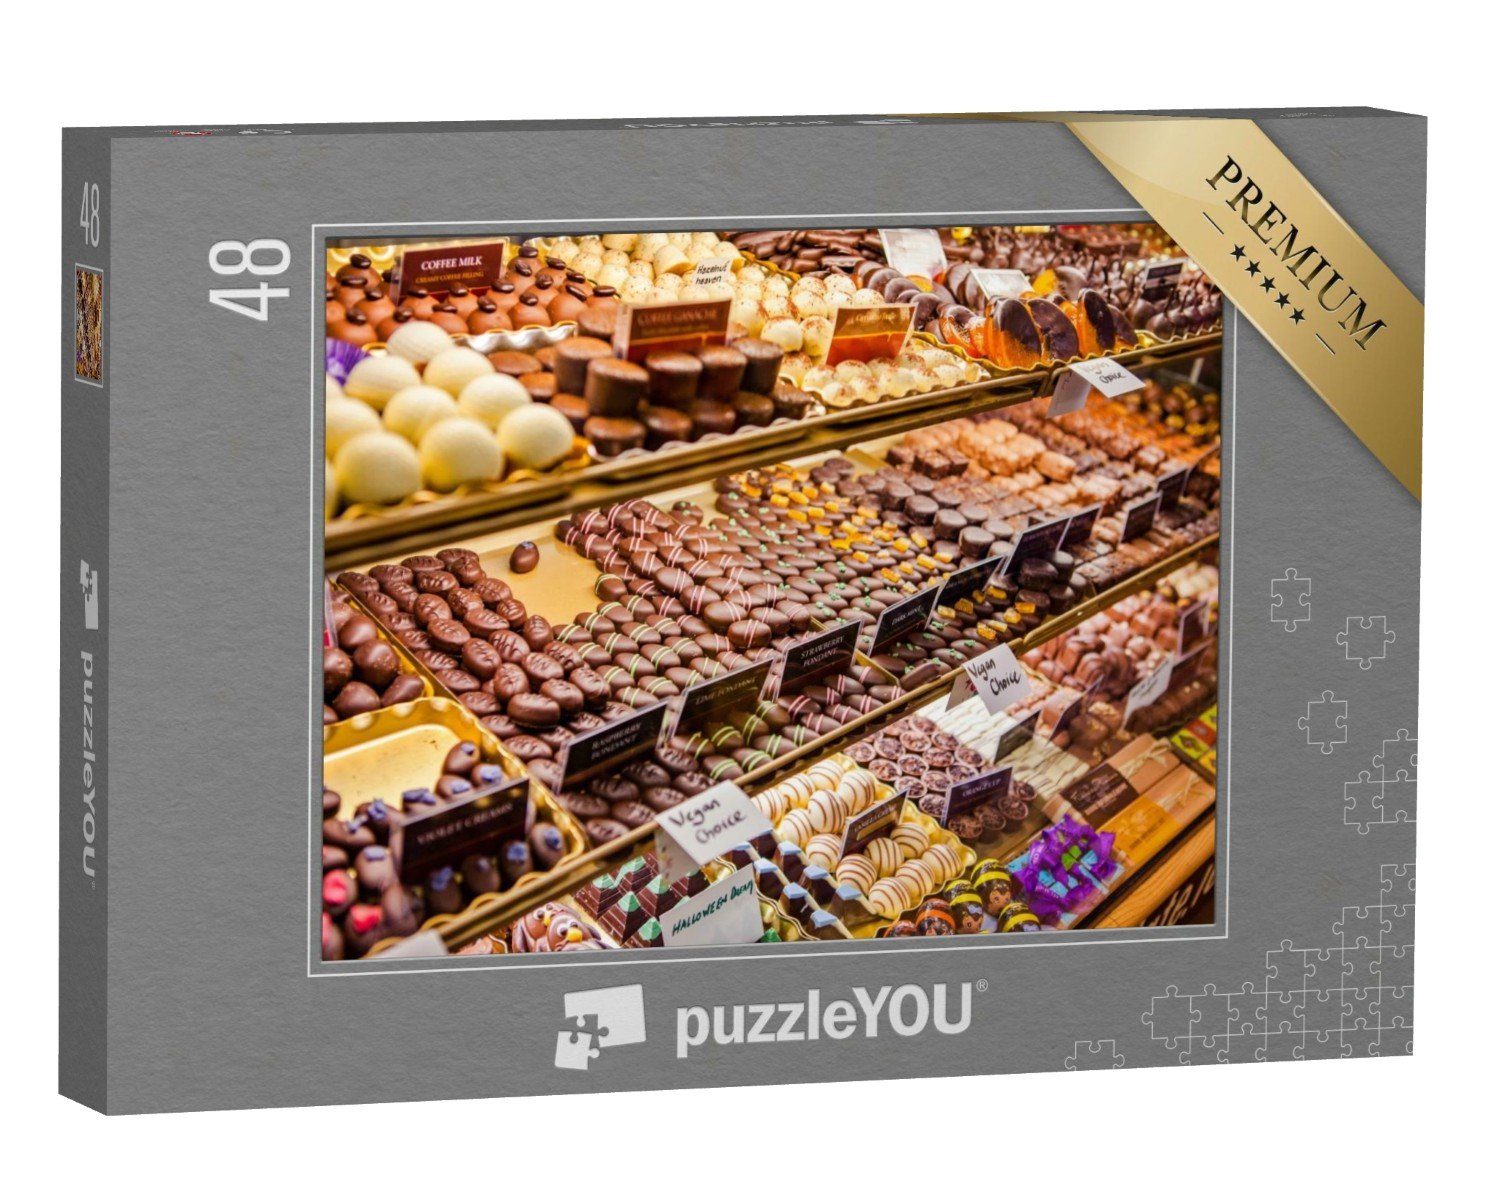 puzzleYOU Puzzle Schokopralinen auf dem englischen Markt, Irland, 48 Puzzleteile, puzzleYOU-Kollektionen Brüssel, Europäische Städte